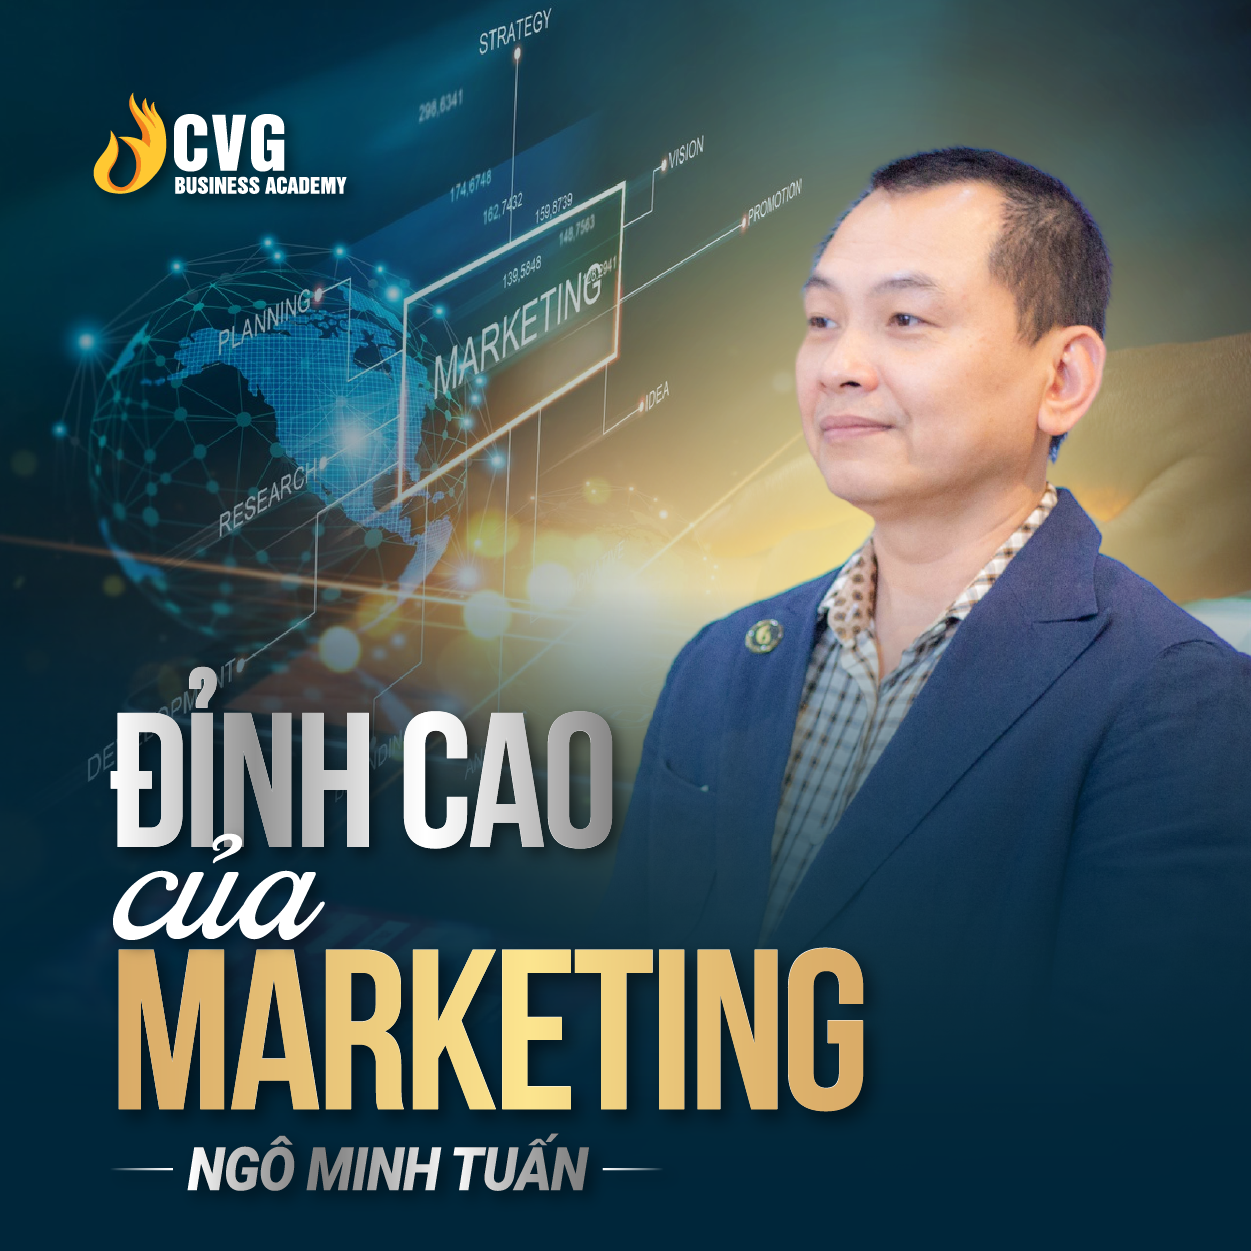 ĐỈNH CAO CỦA MARKETING | Ngô Minh Tuấn | Học Viện CEO Việt Nam Global